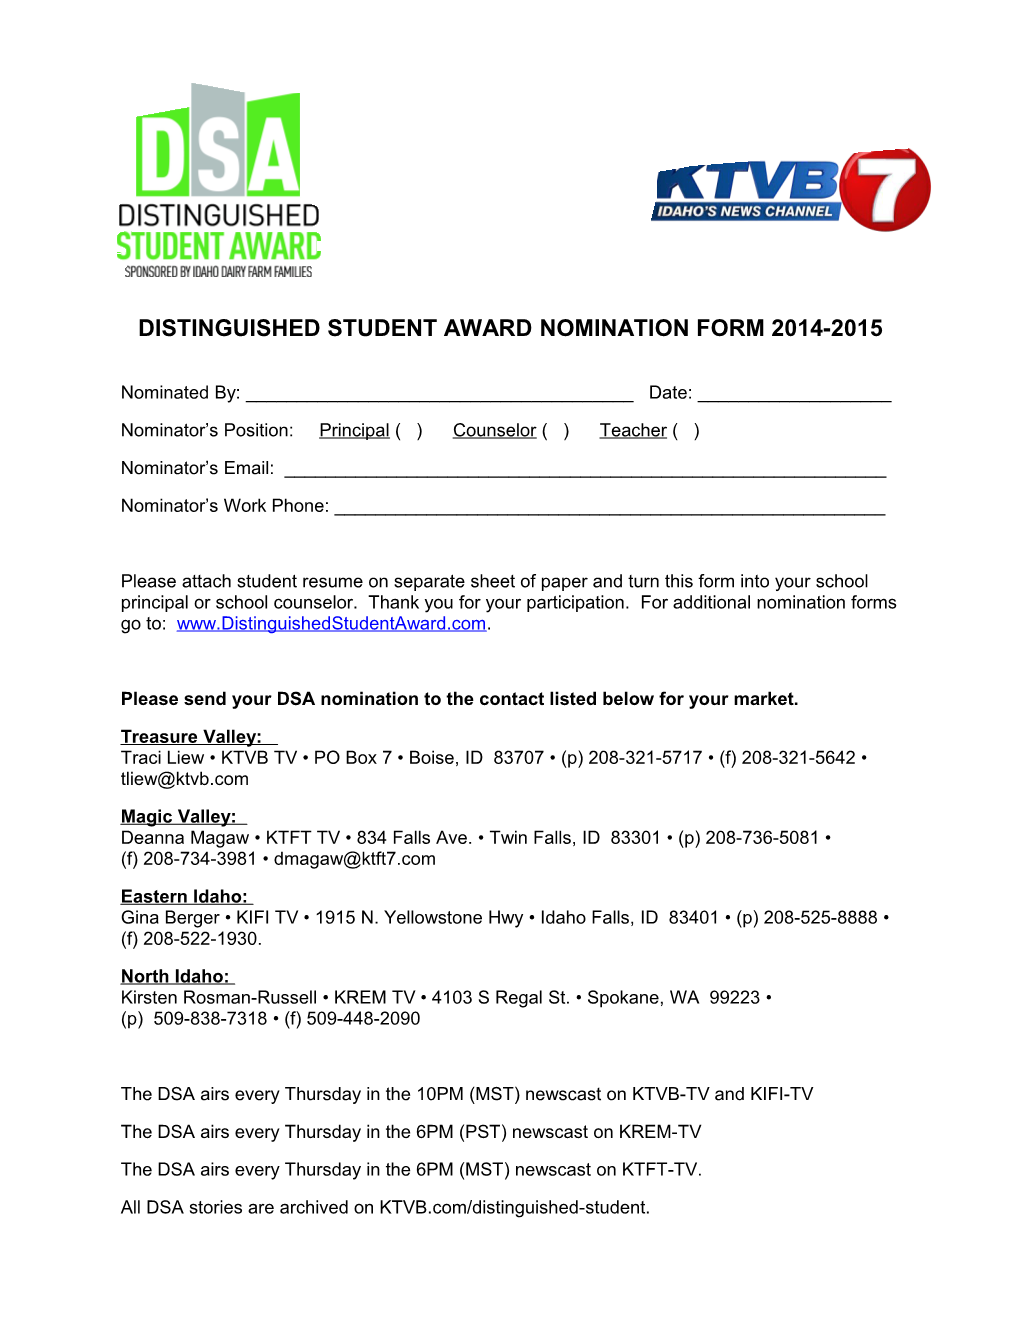 Distinguished Student Award Nomination Form 2014-2015